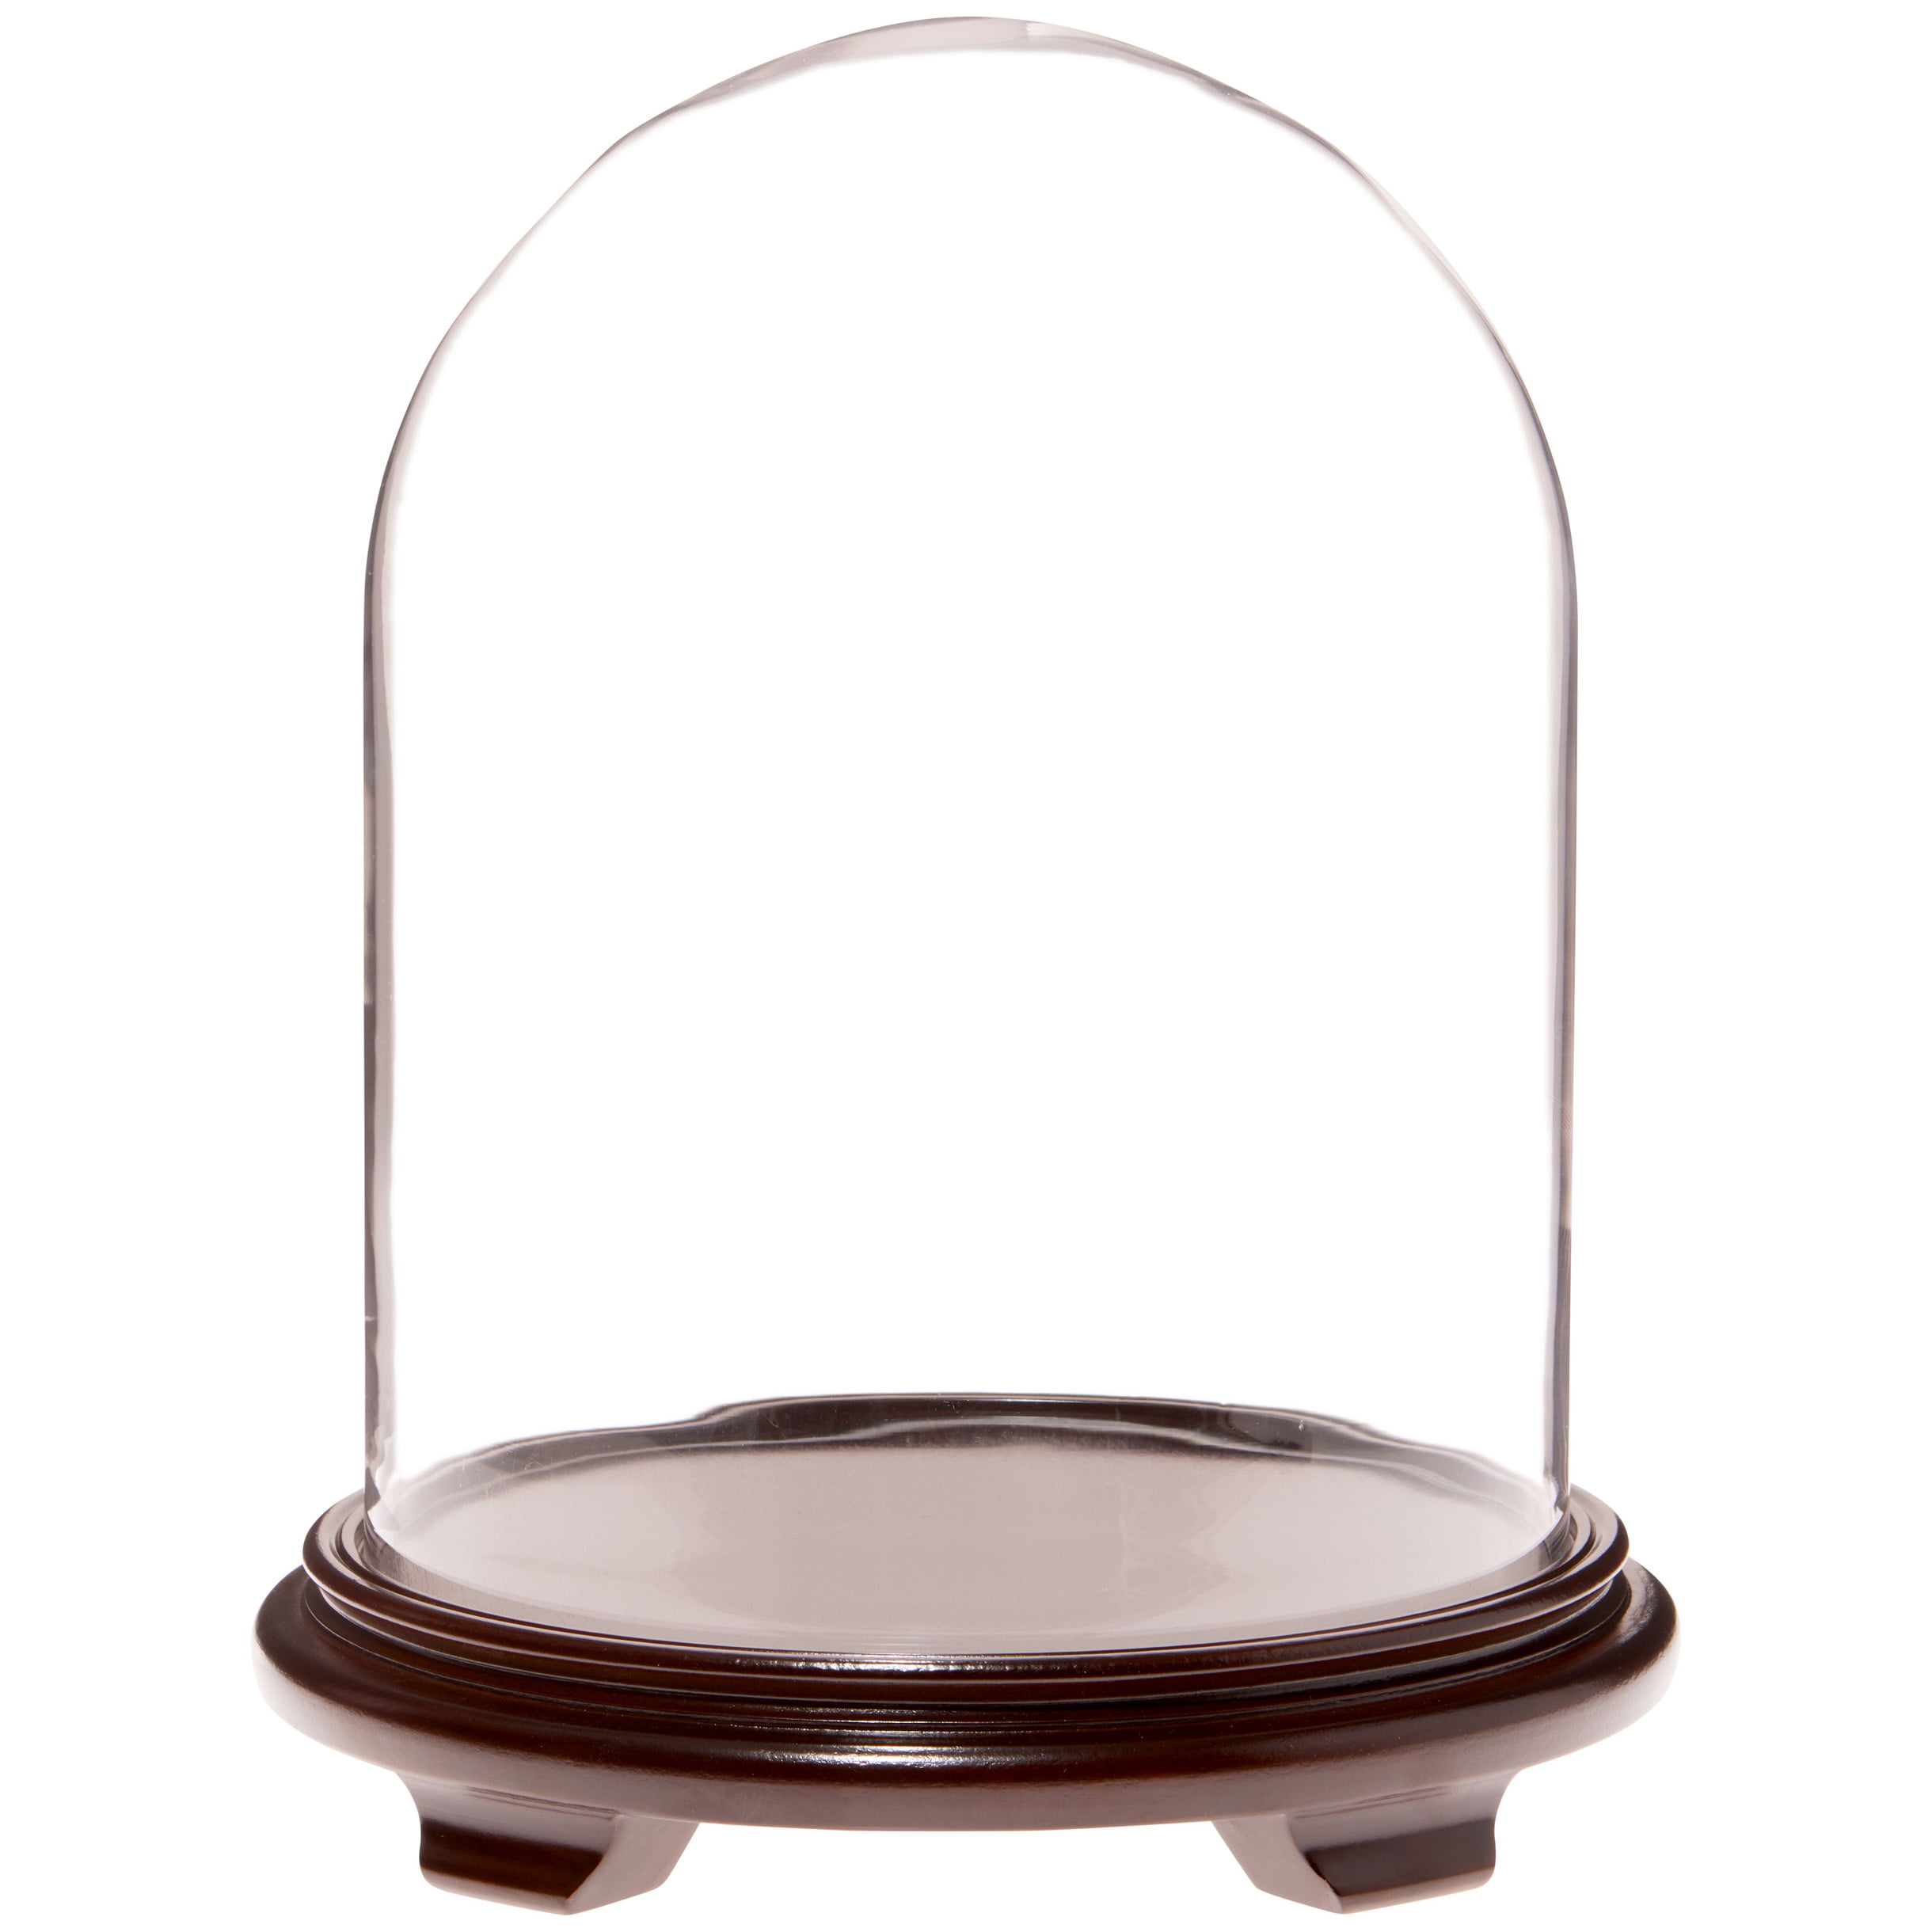 Walnut Base Plymor 11.75" x 15" Glass Display Dome Cloche 